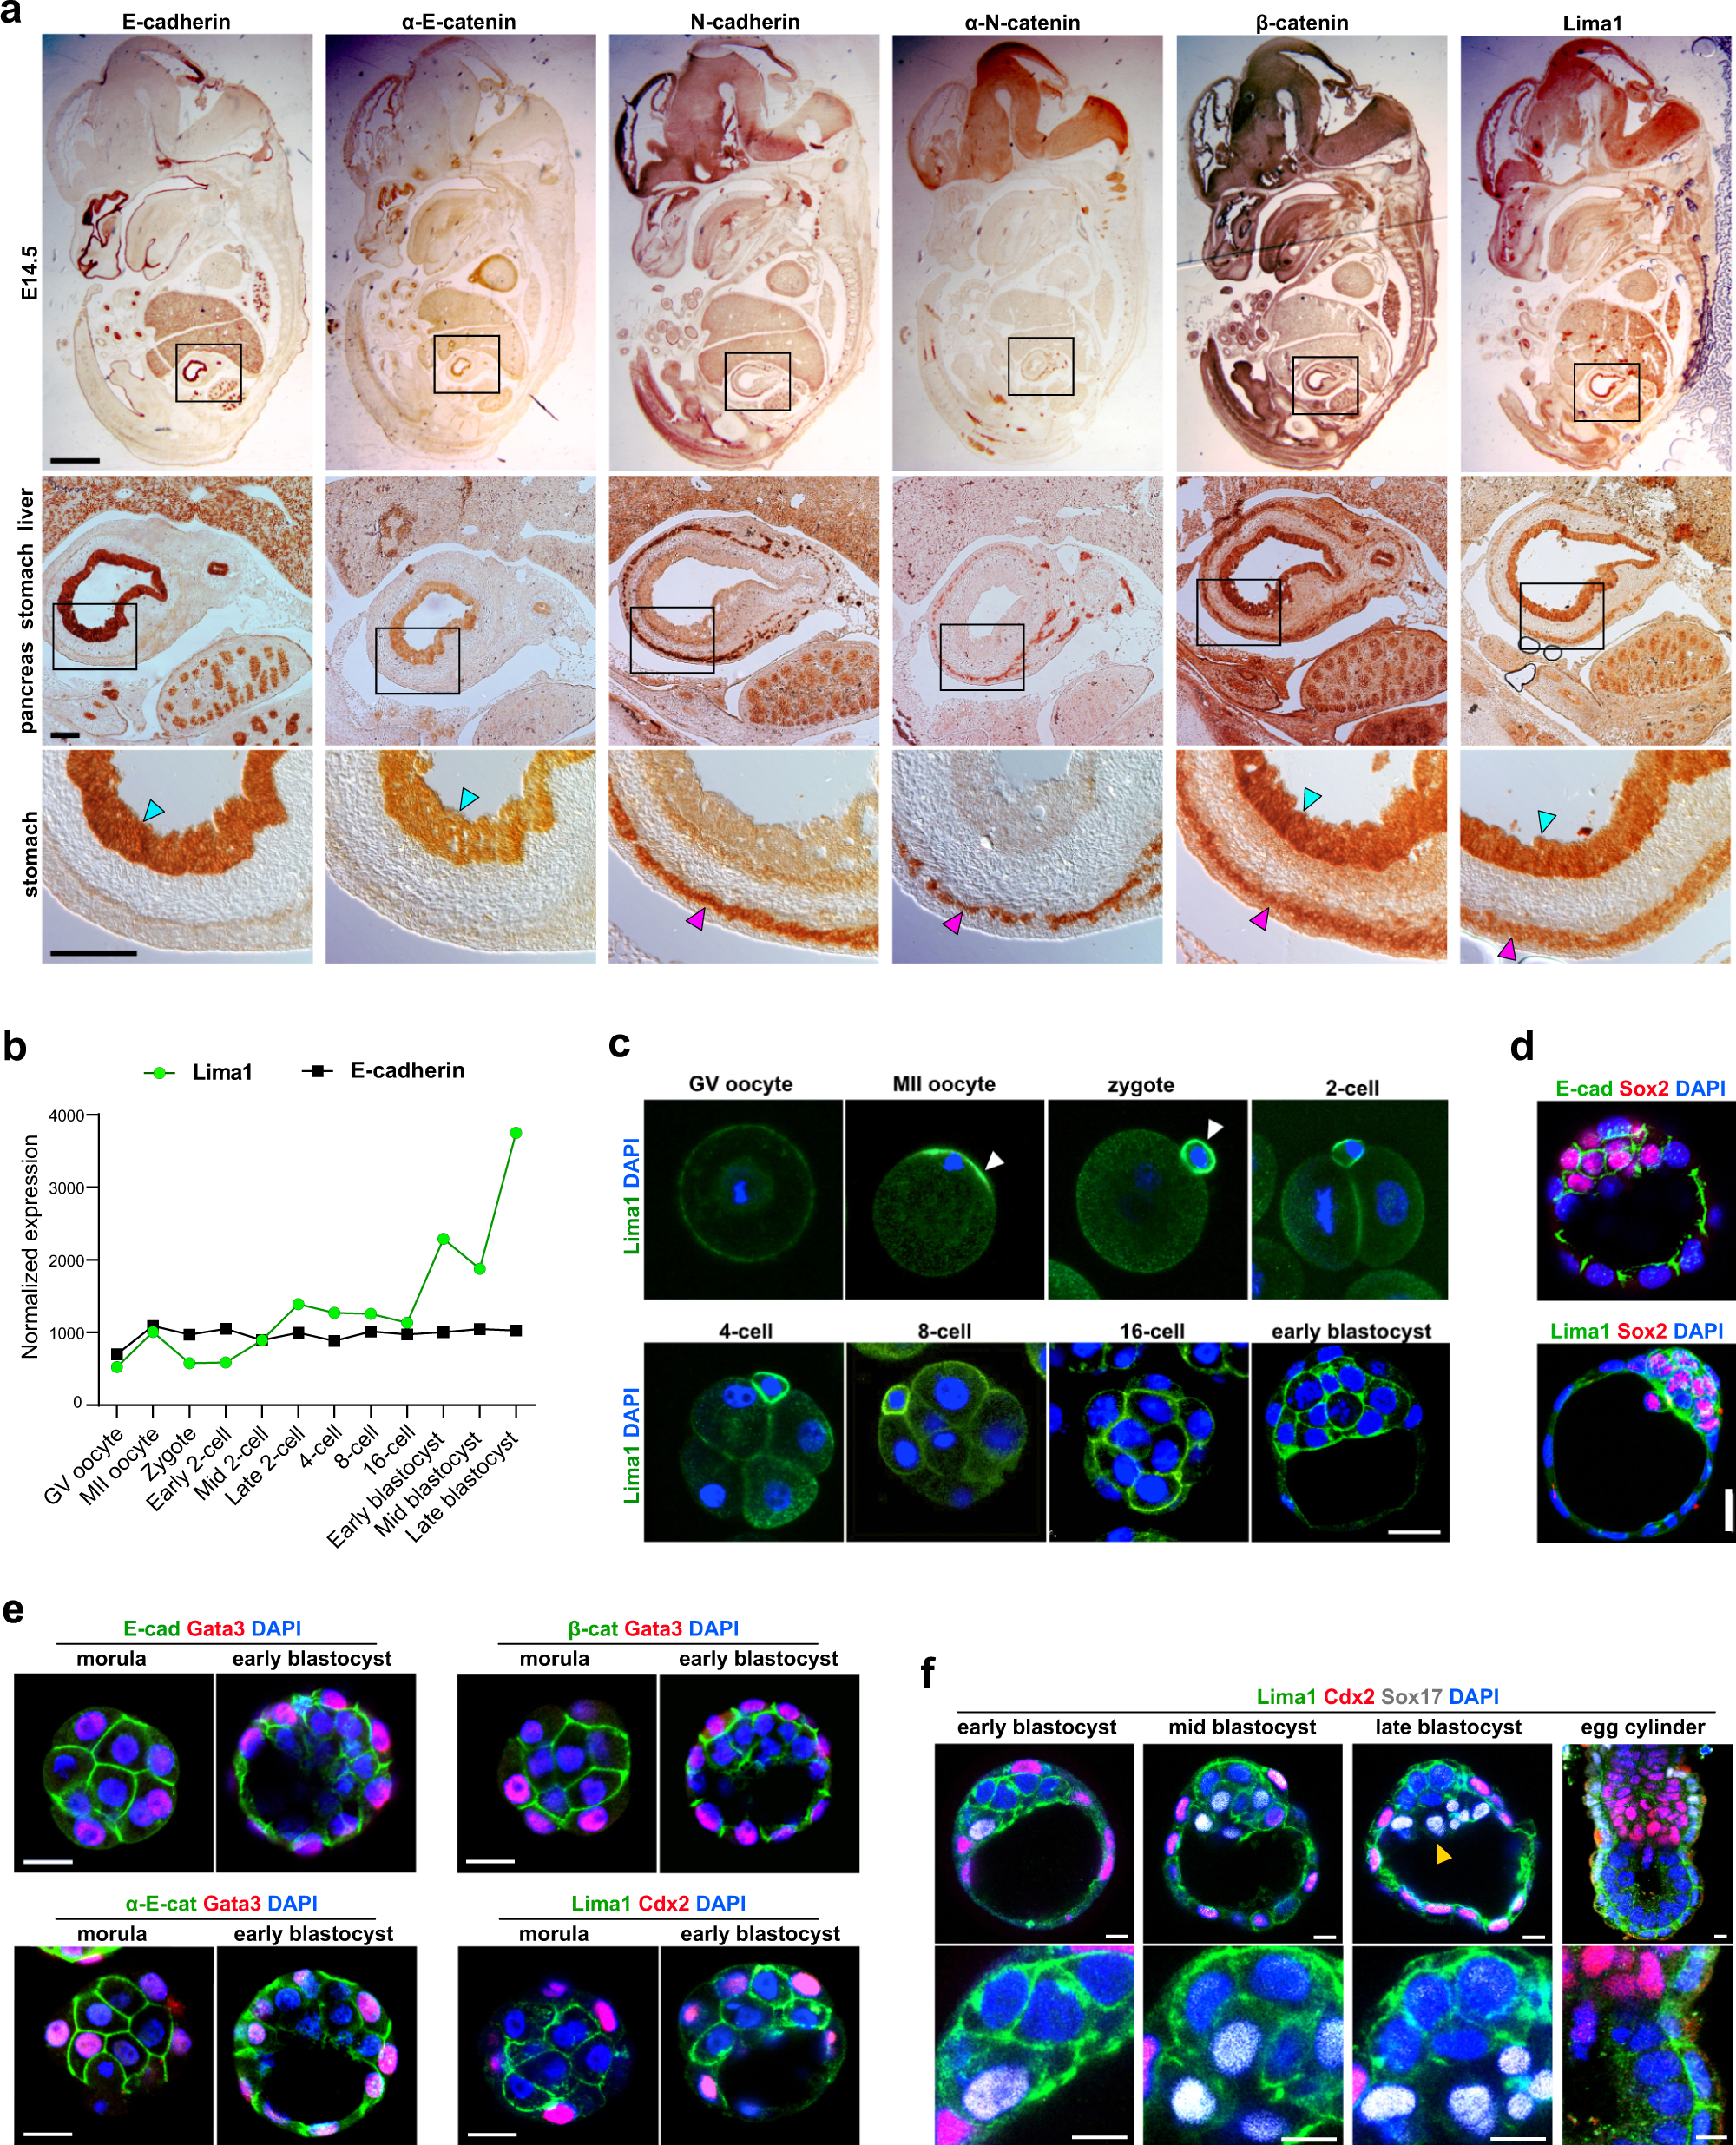 IB Biology 1.6 & 1.1 Slides: Mitosis & Stem Cells